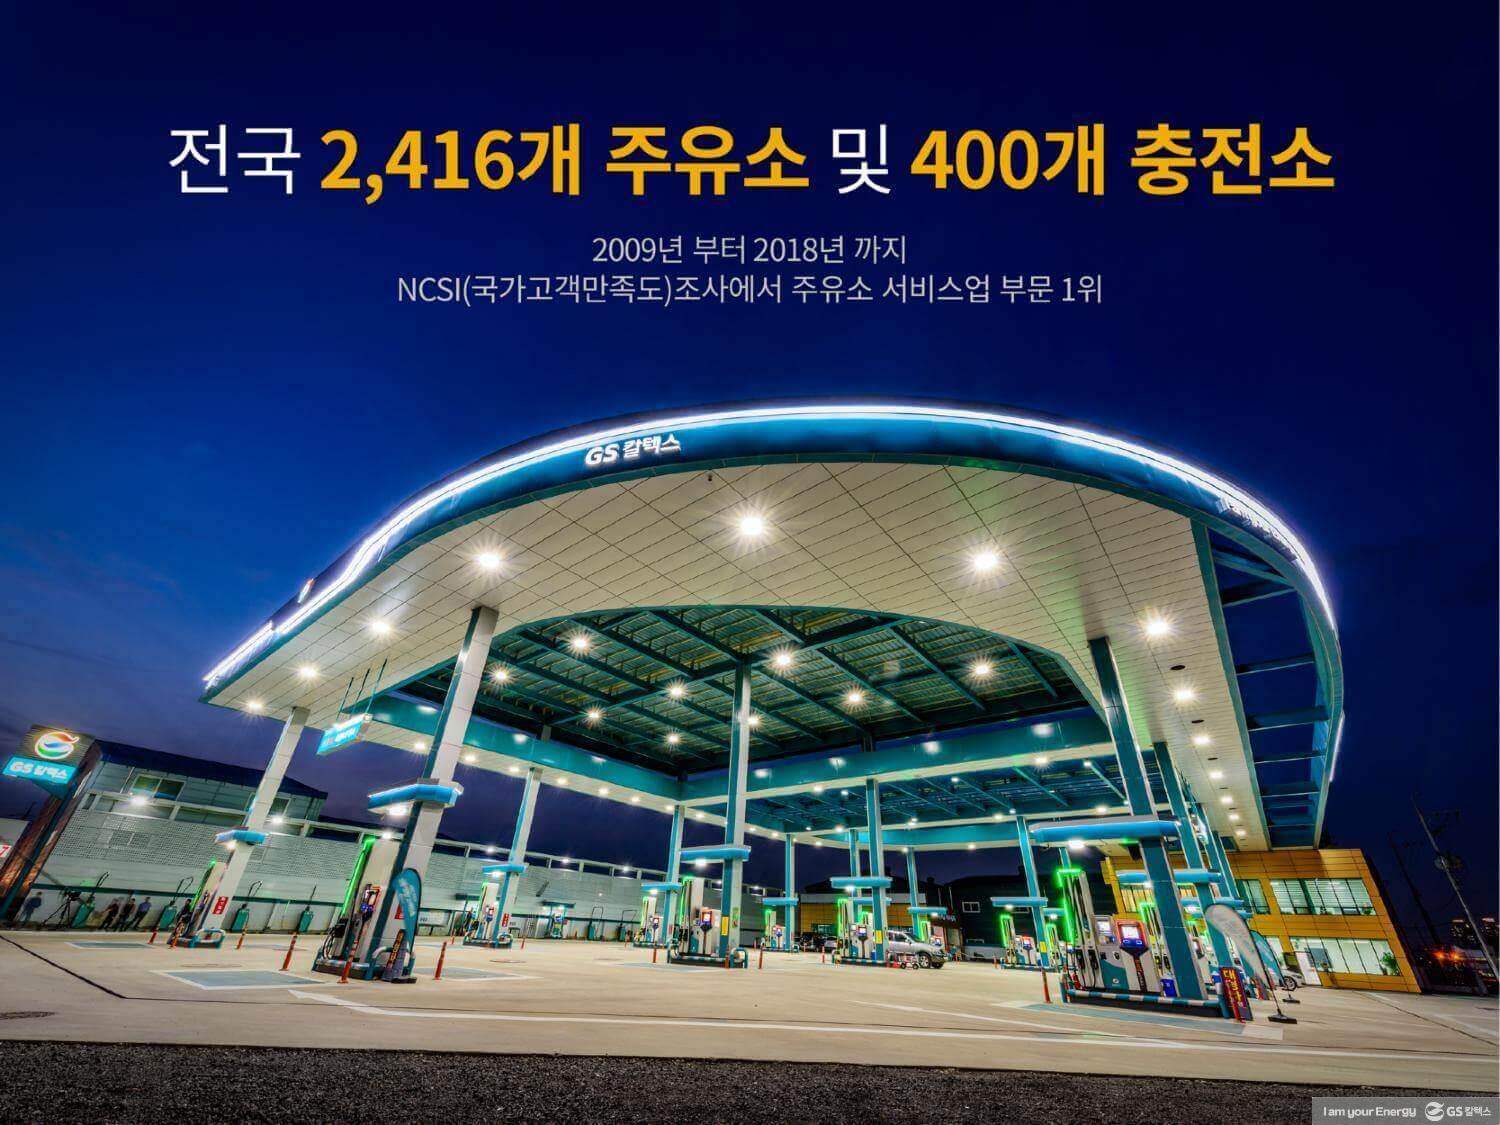 숫자로 보는 GS칼텍스 이야기 | GSC BS MH recruit newcomer yeosu plant introduction 2017 2018ver 13